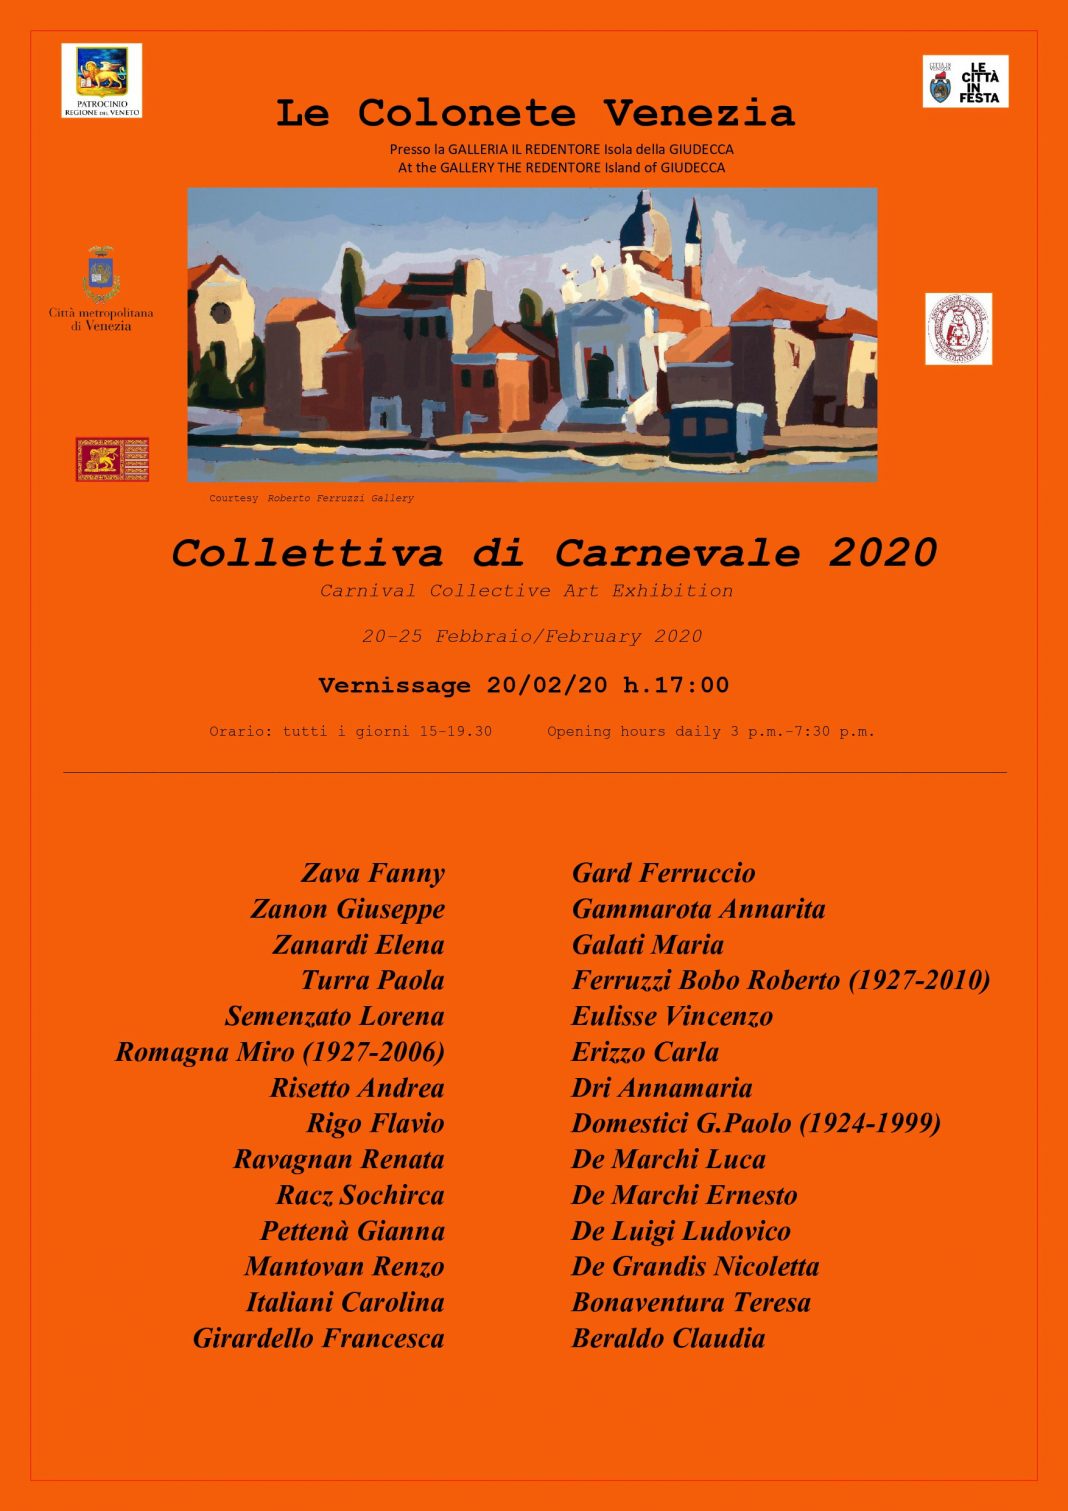 Collettiva di Carnevale 2020https://www.exibart.com/repository/media/formidable/11/Manifesto-ferr-convertito-2_page-0001-1068x1511.jpg